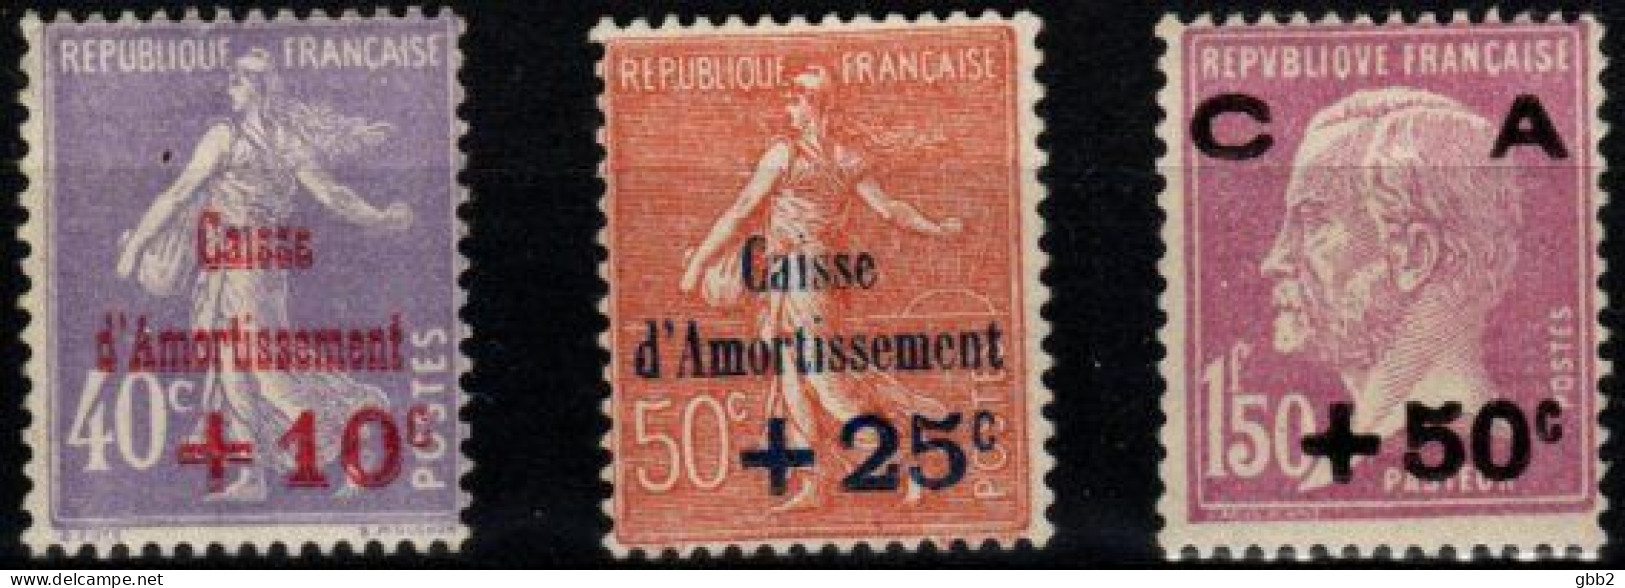 FRANCE - YT N° 249 à 251 "Caisse D'amortissement" 2ème Série. Neuf** LUXE. - 1927-31 Cassa Di Ammortamento